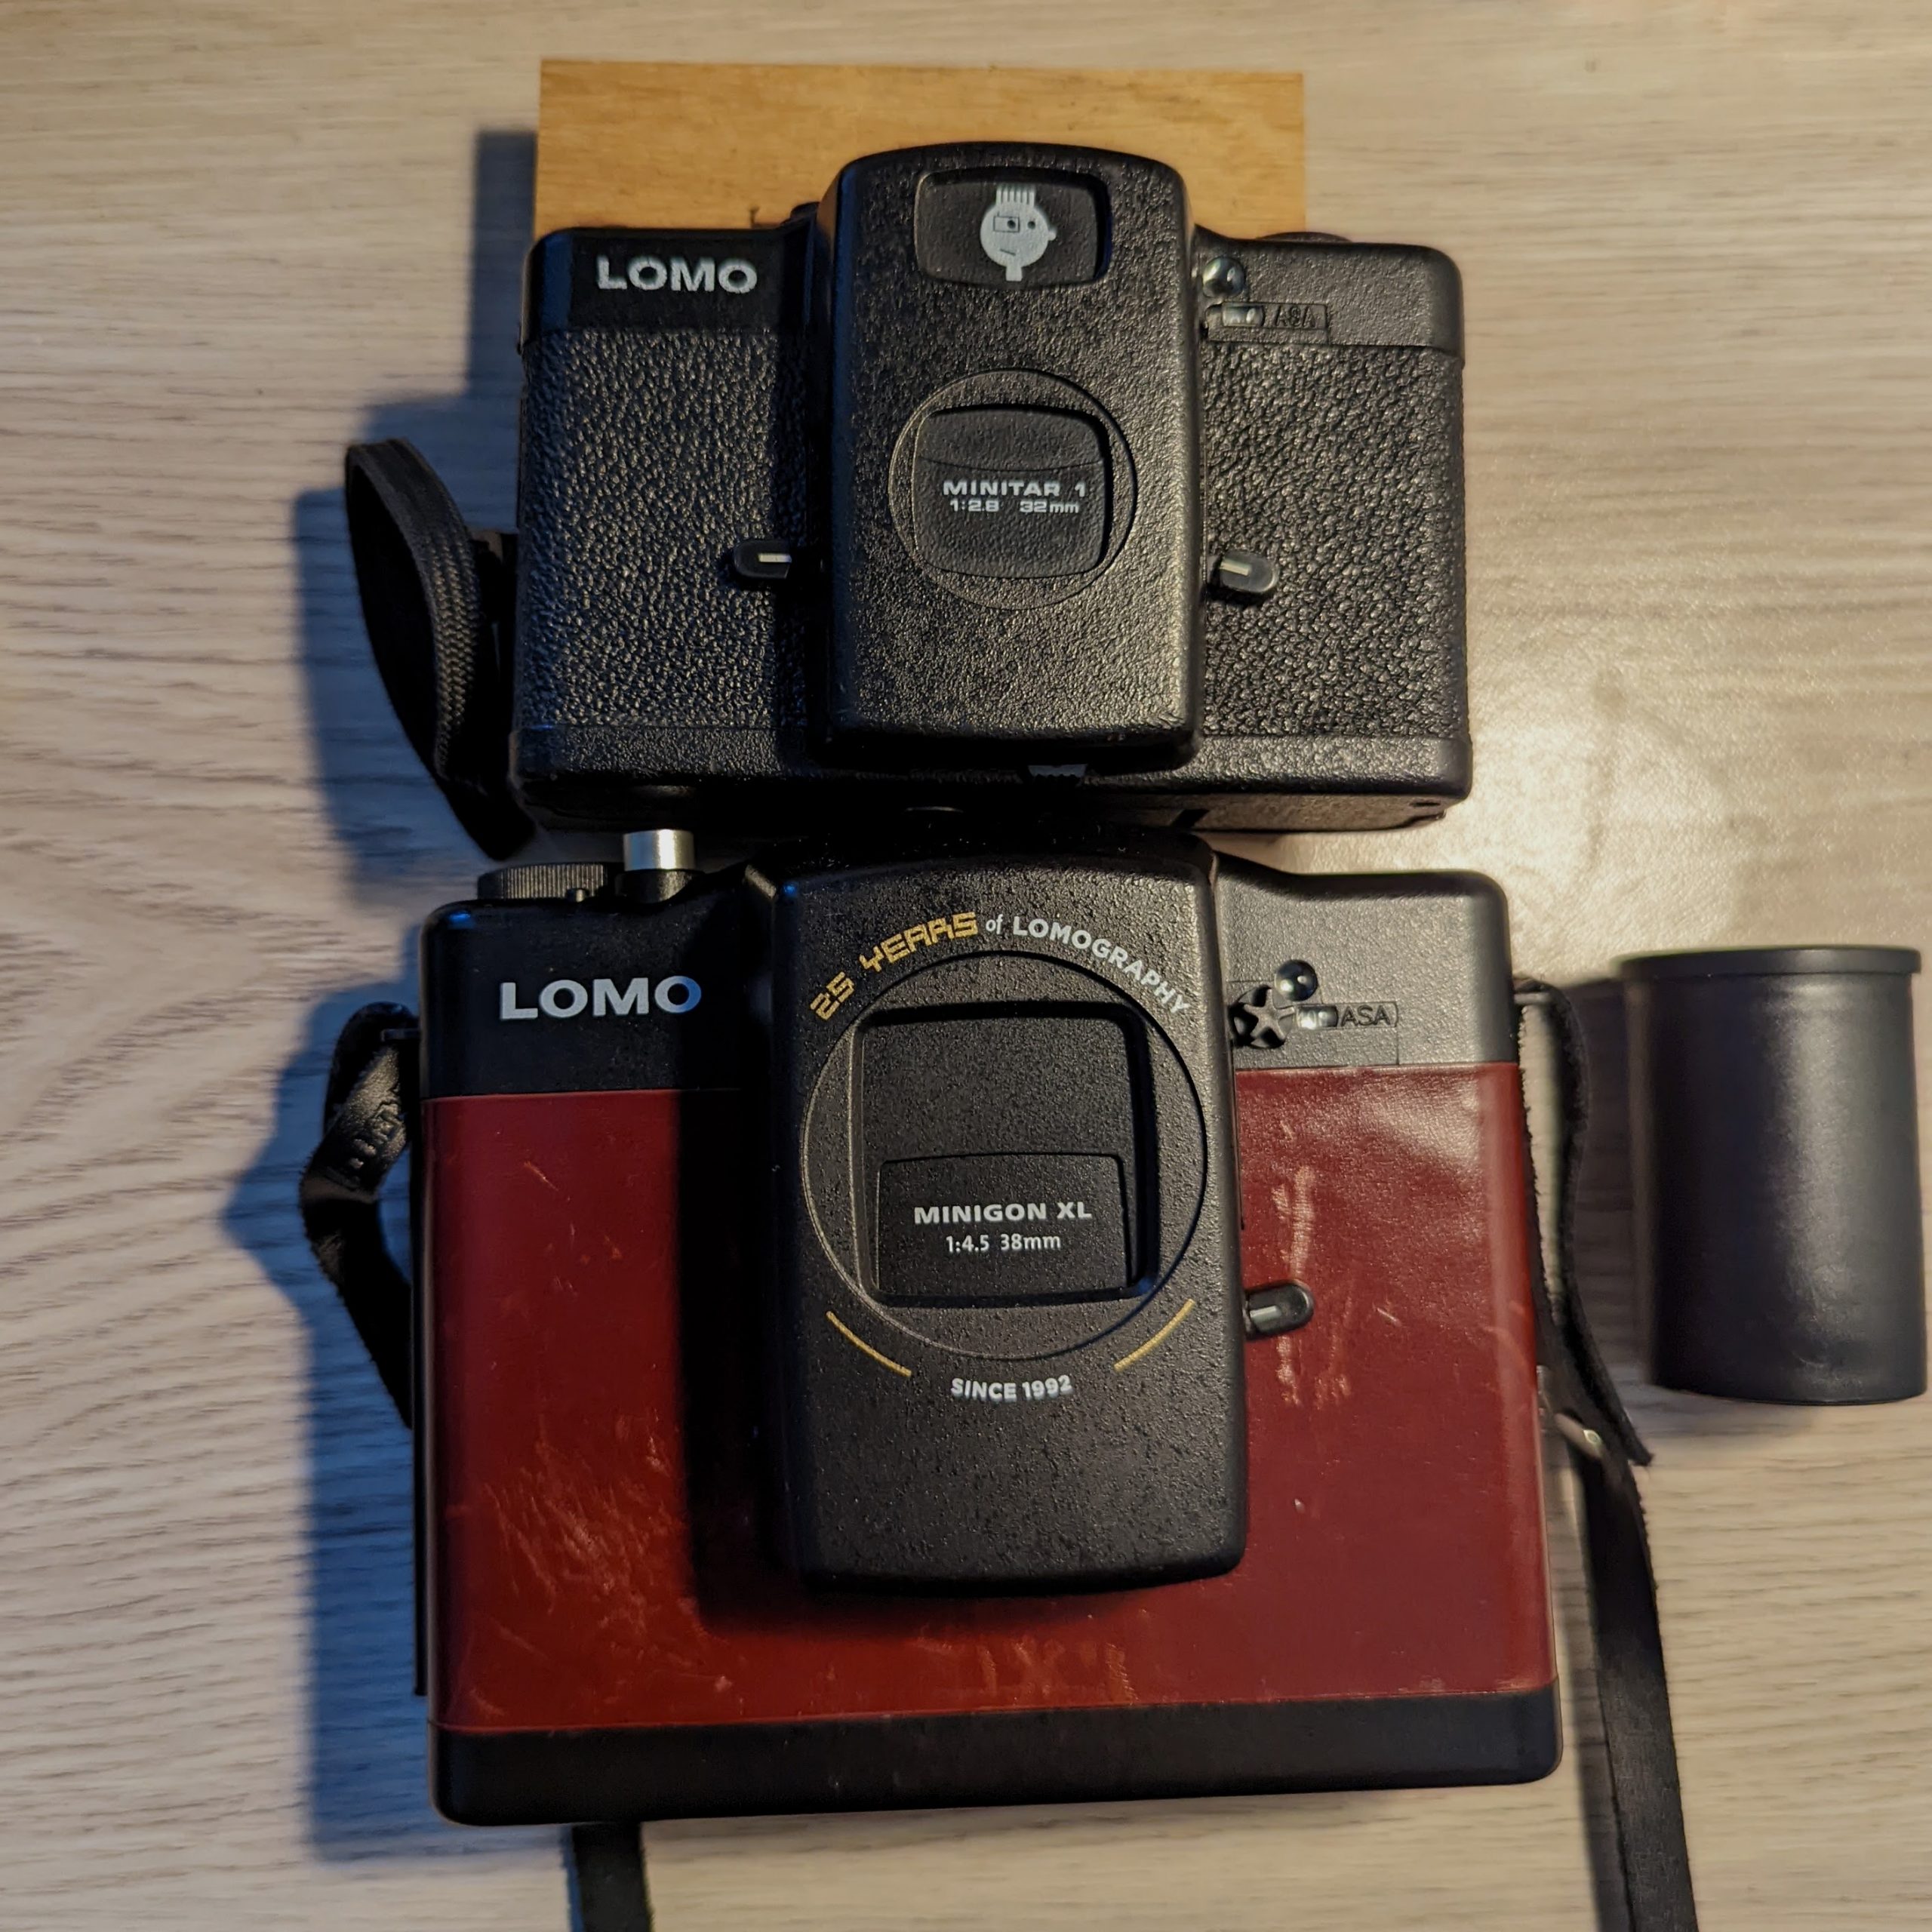 Test Kodak Ektar H35 (My 1st Toy Camera with… — · Lomography